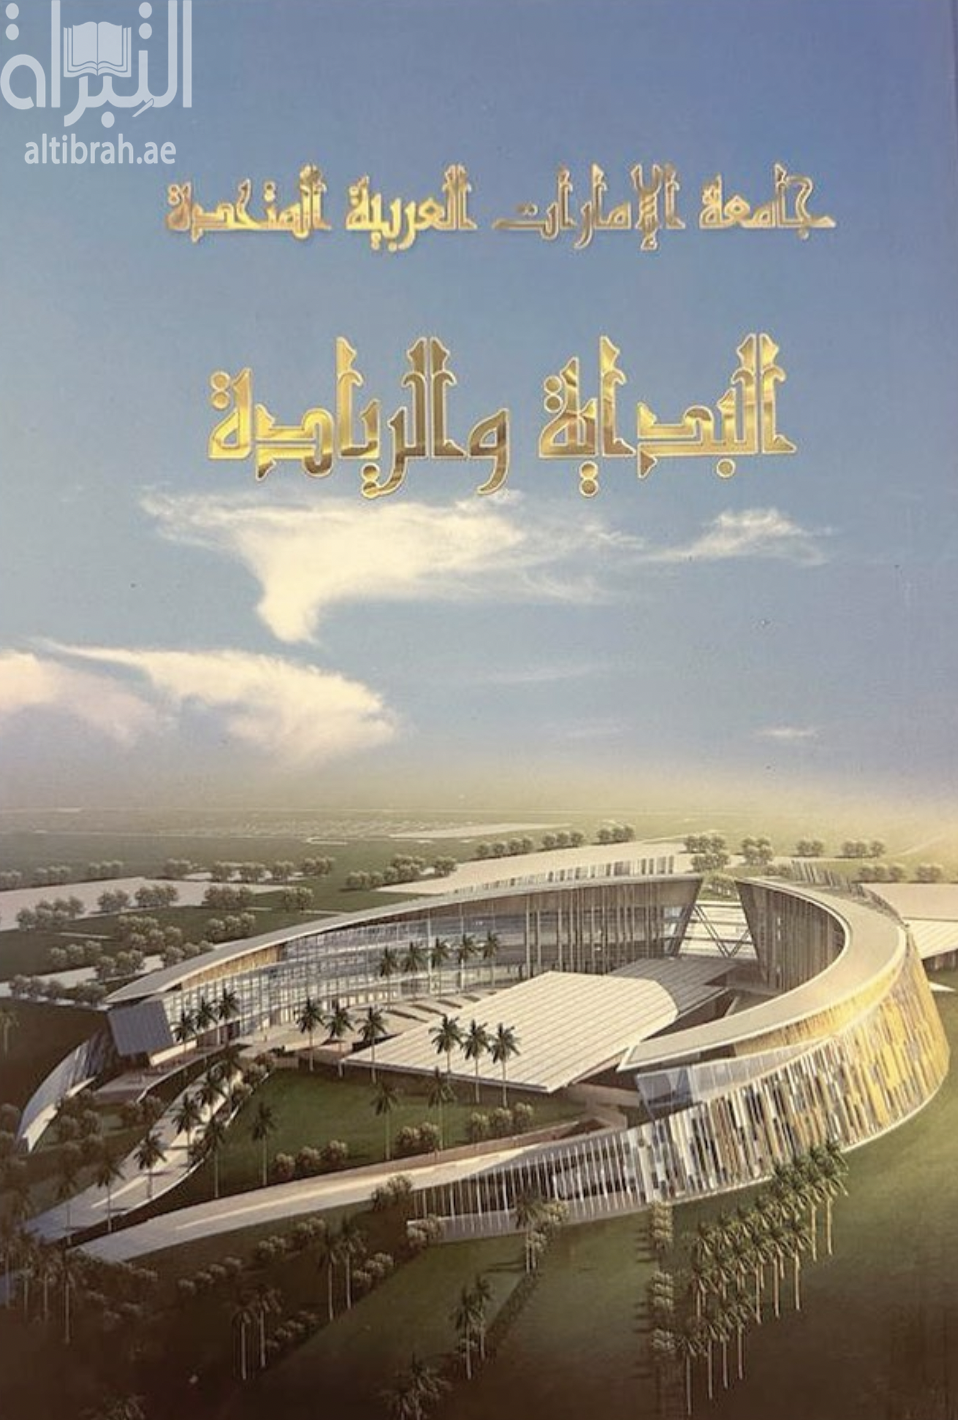 جامعة الإمارات العربية المتحدة : البداية والريادة